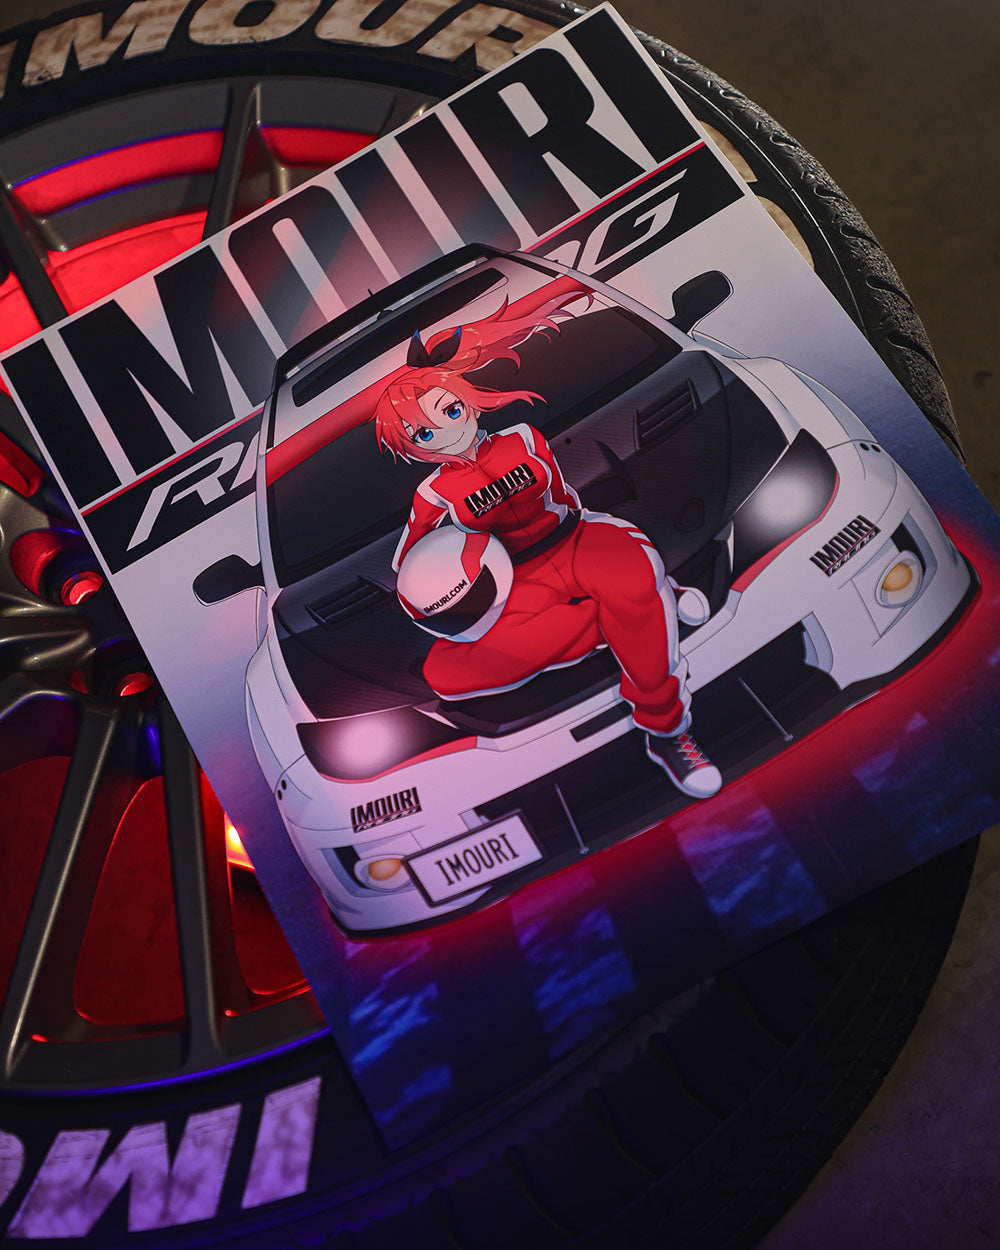 Imouri-Chan Street Racer Matte Anime Print